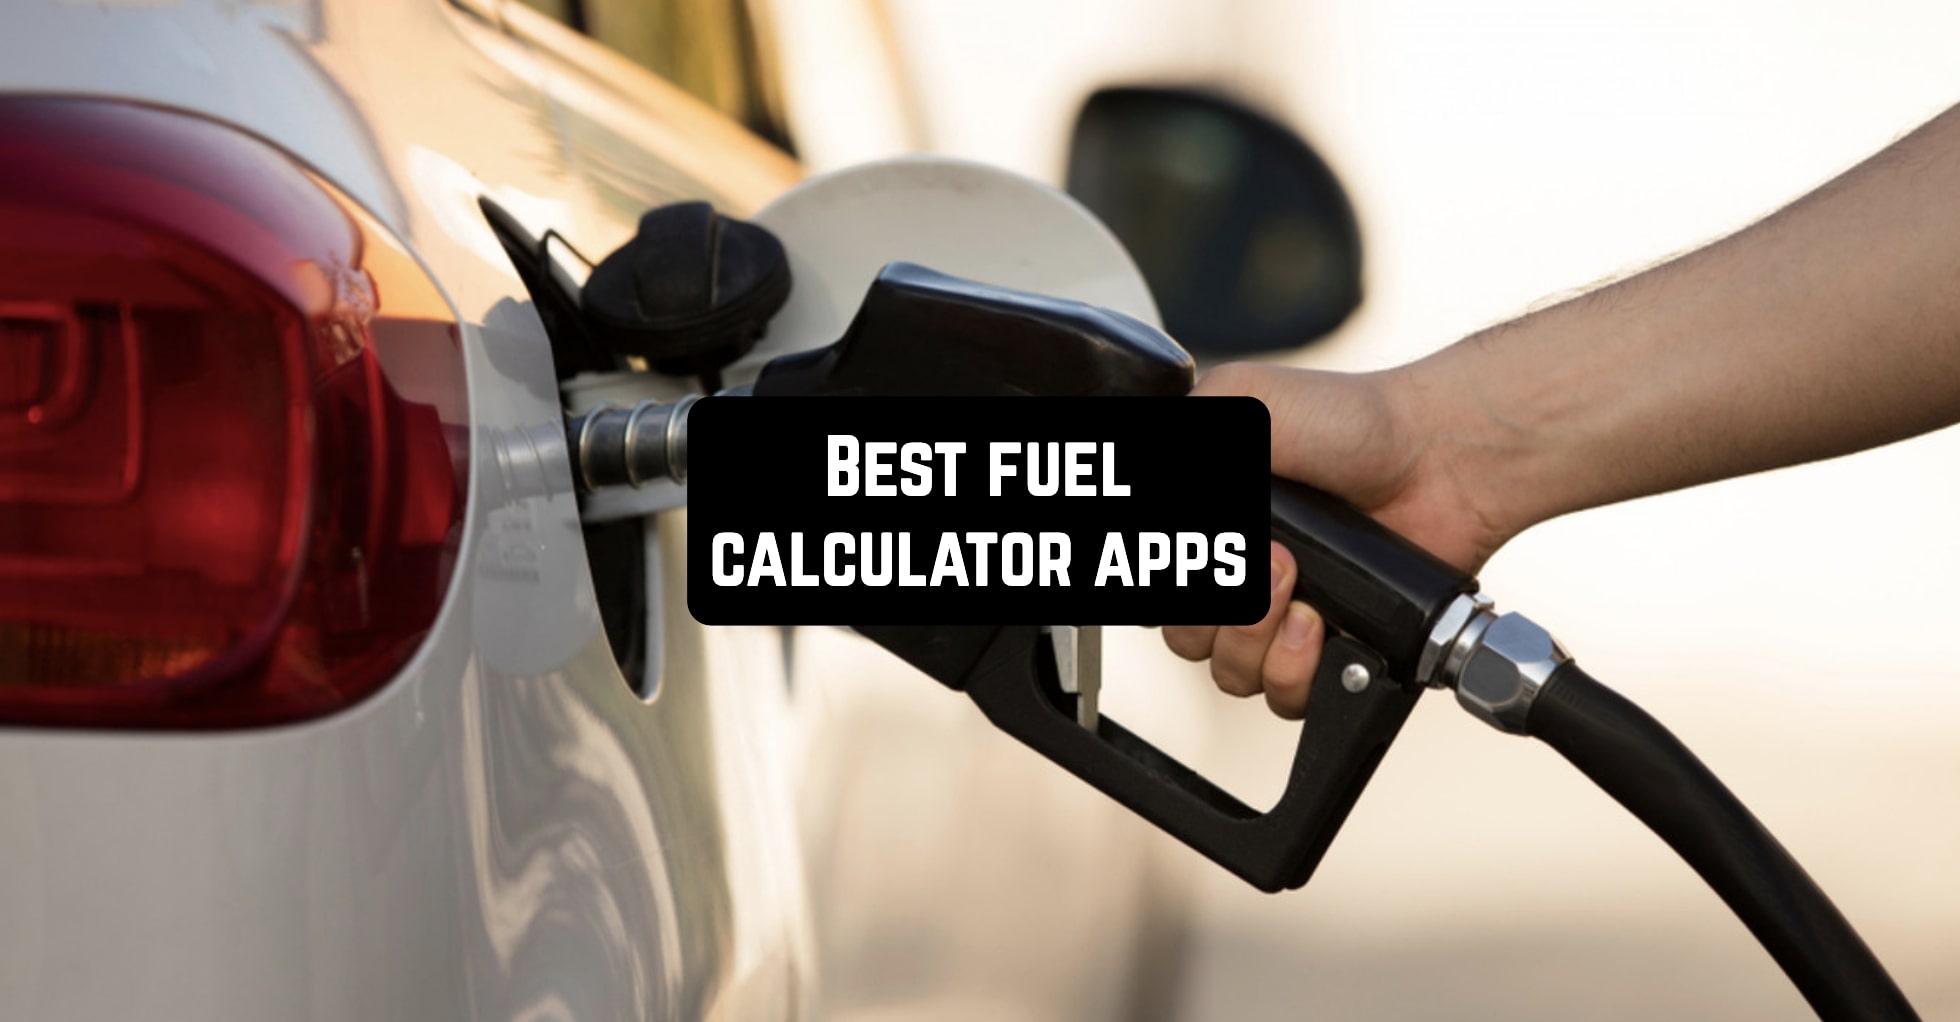 Best fuel calculator apps